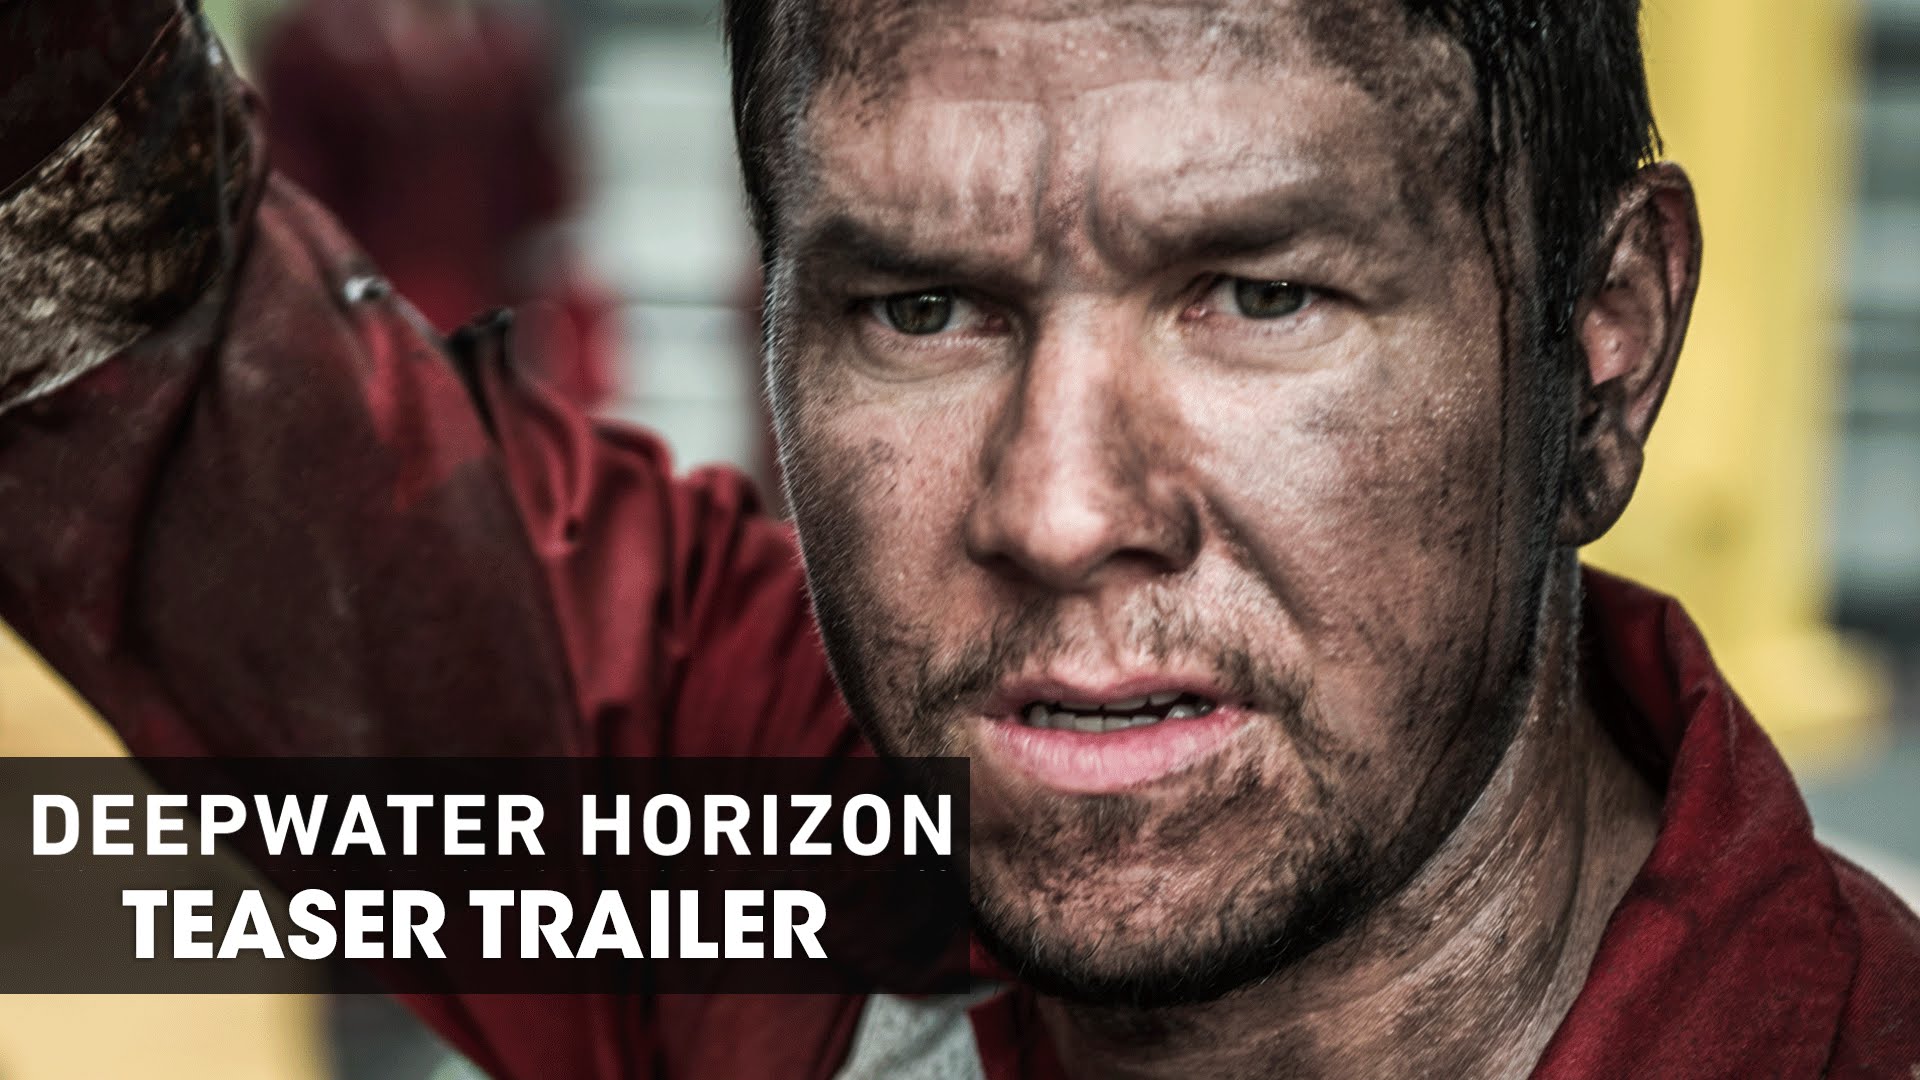 Deepwater Horizon (2016) – Official Movie Teaser Trailer